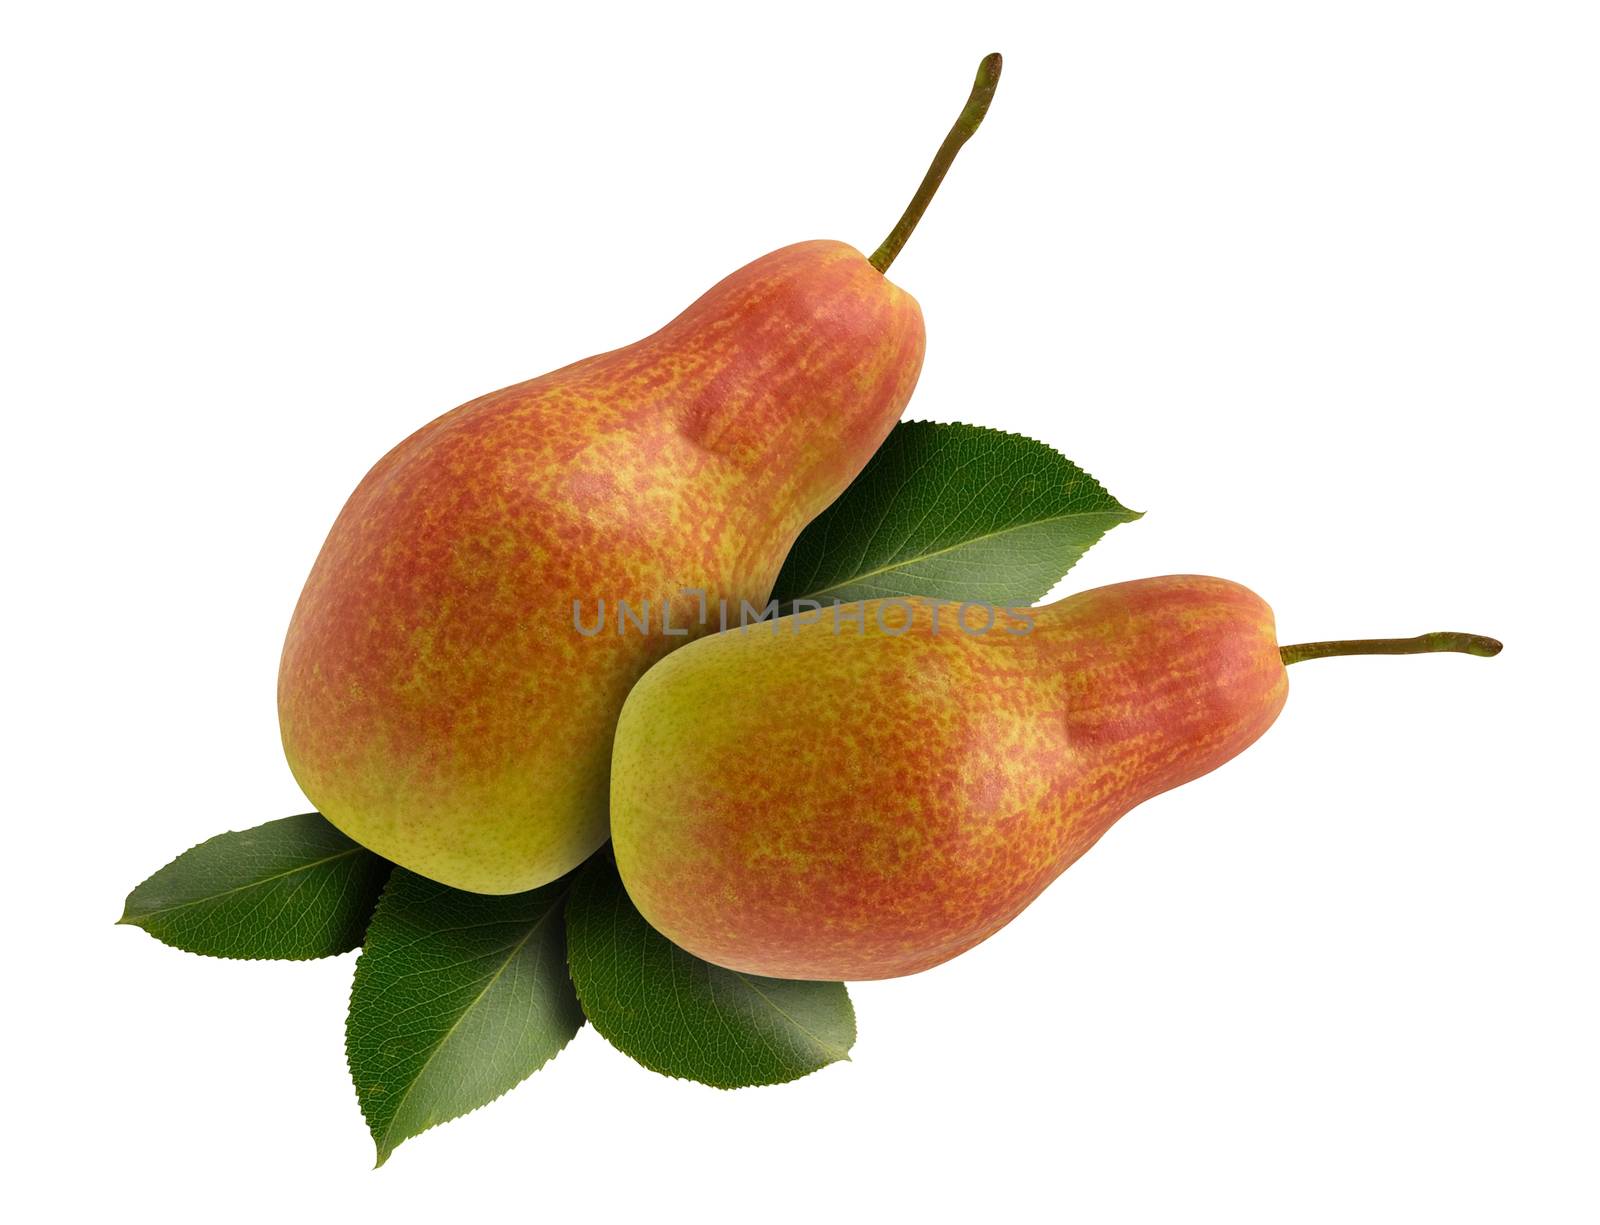 pears pair by Venakr